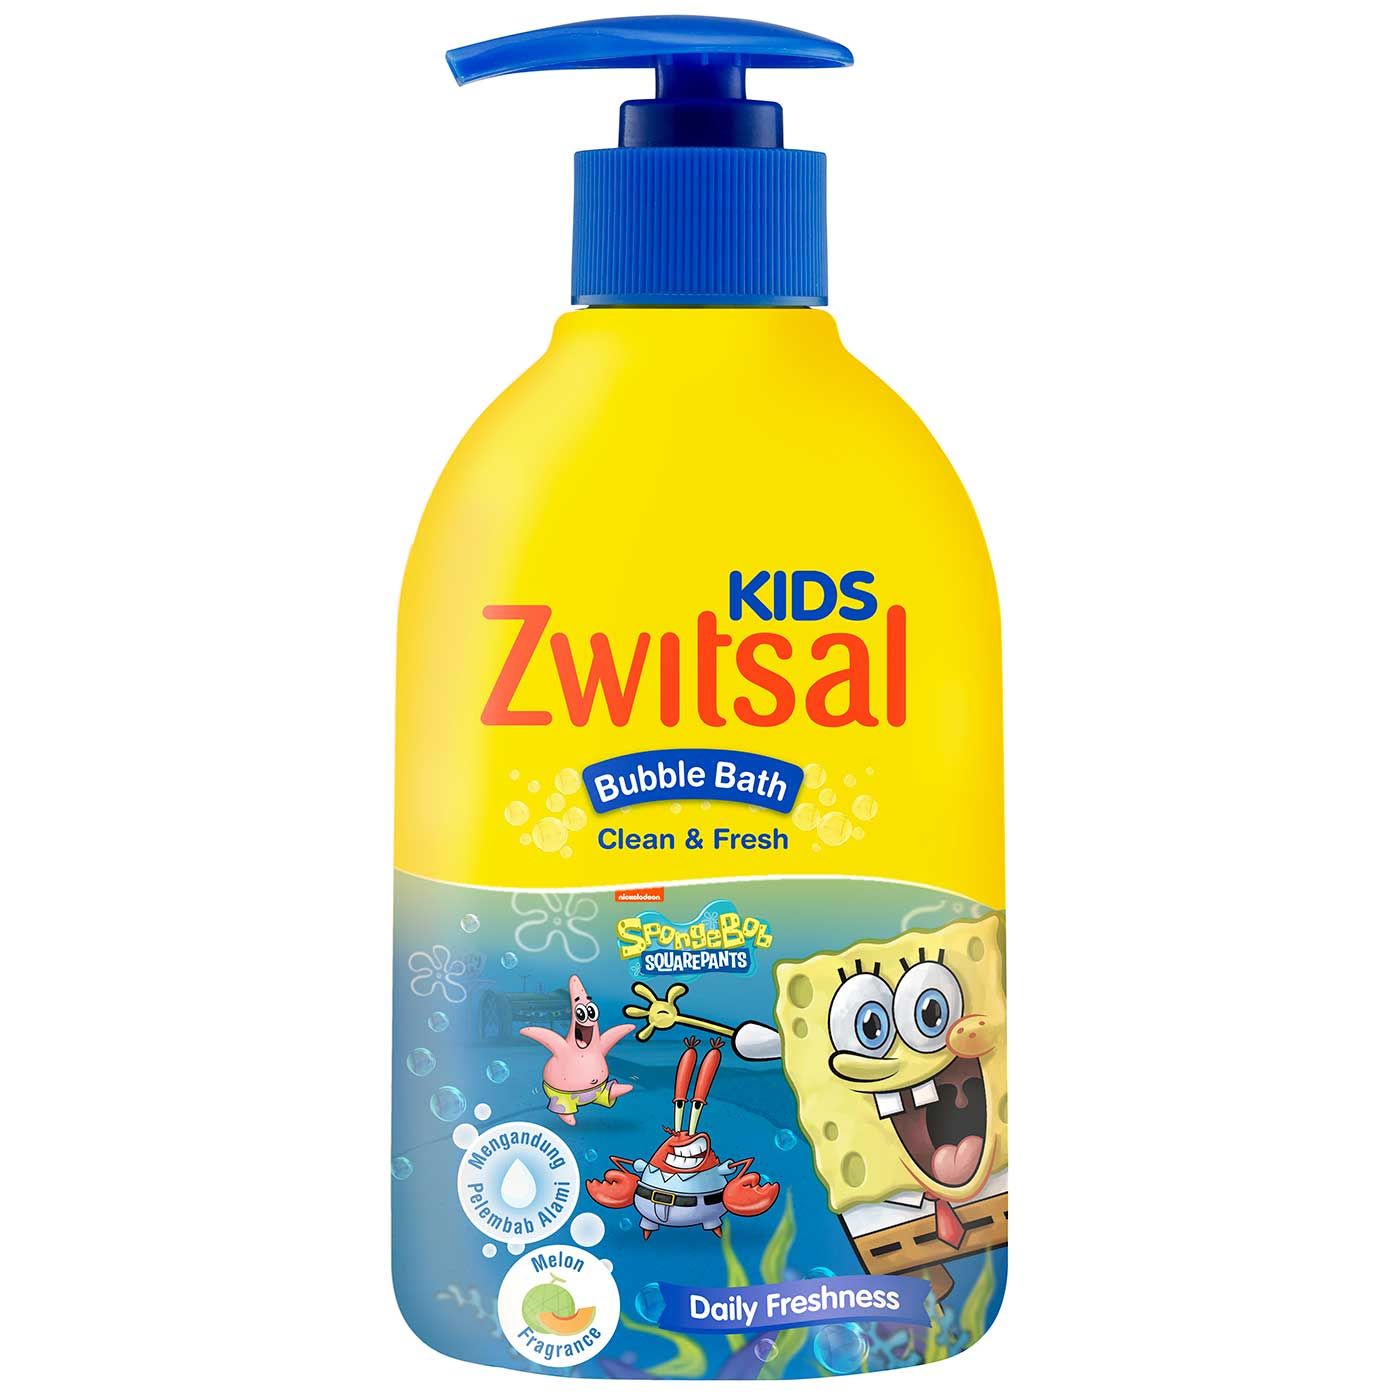 Zwitsal Kids Bubble Bath Blue Clean & Fresh 280ml - 2